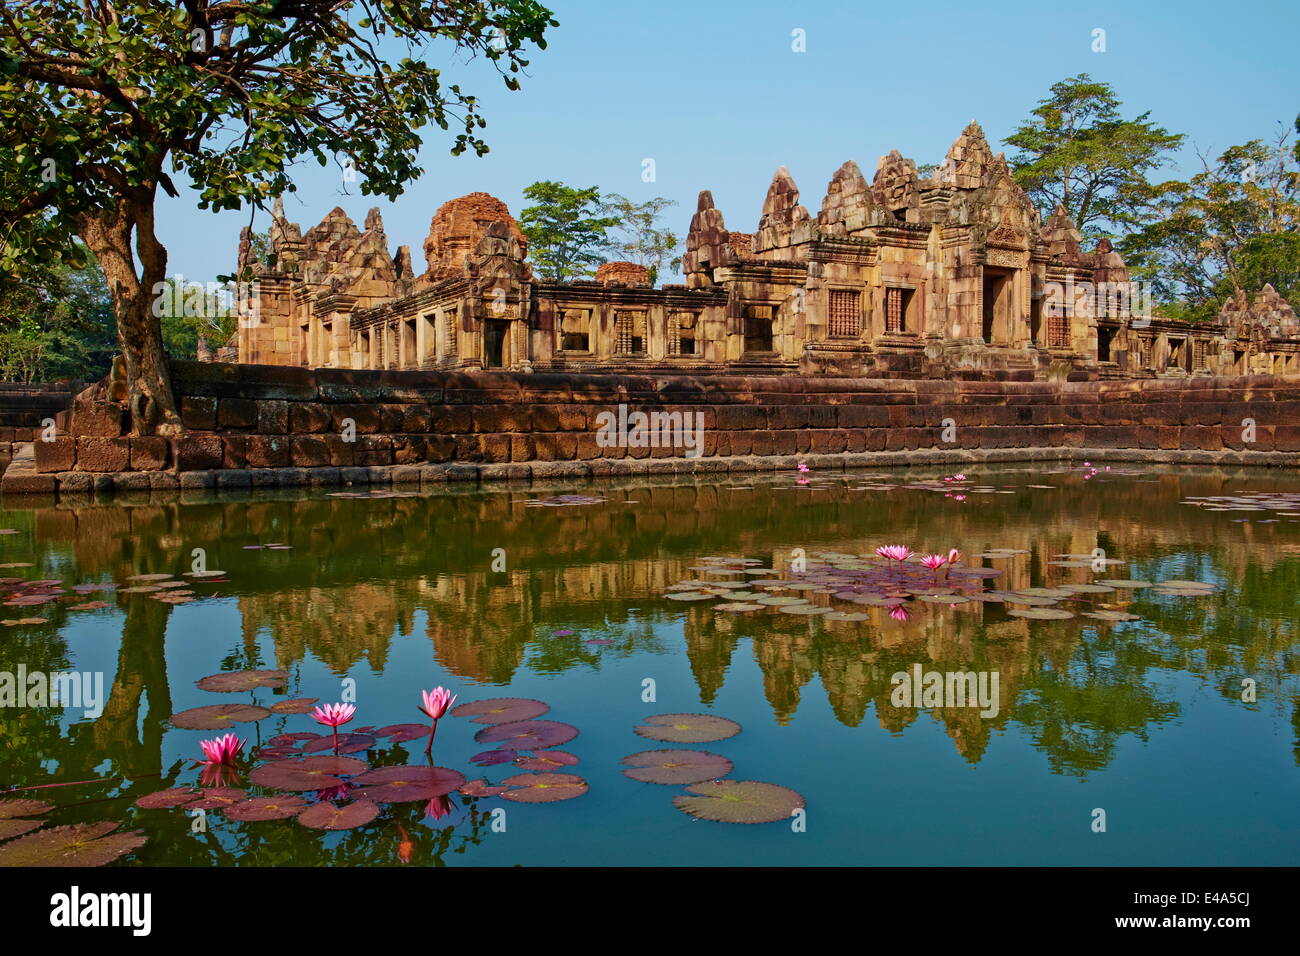 Muang Tham Temple, temple Khmer à partir de la période et le style d'Angkor, Buriram Province, Thaïlande, Asie du Sud, Asie Banque D'Images